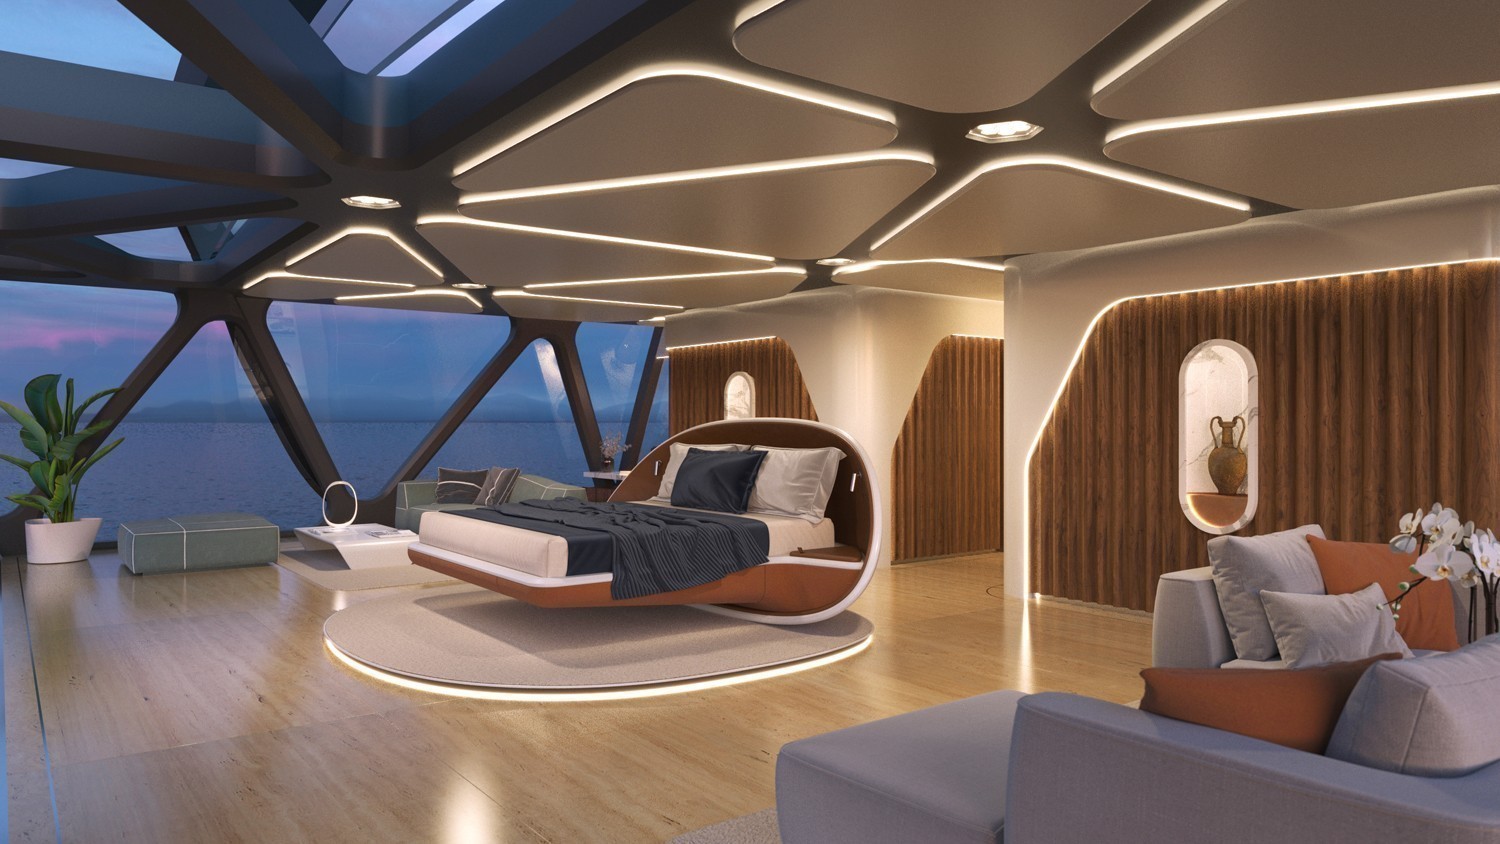 Το «αόρατο γιοτ» του βραβευμένου Ελληνα designer – Το φουτουριστικό σκάφος που σχεδιάστηκε σε μια παραλία στο Κουφονήσι